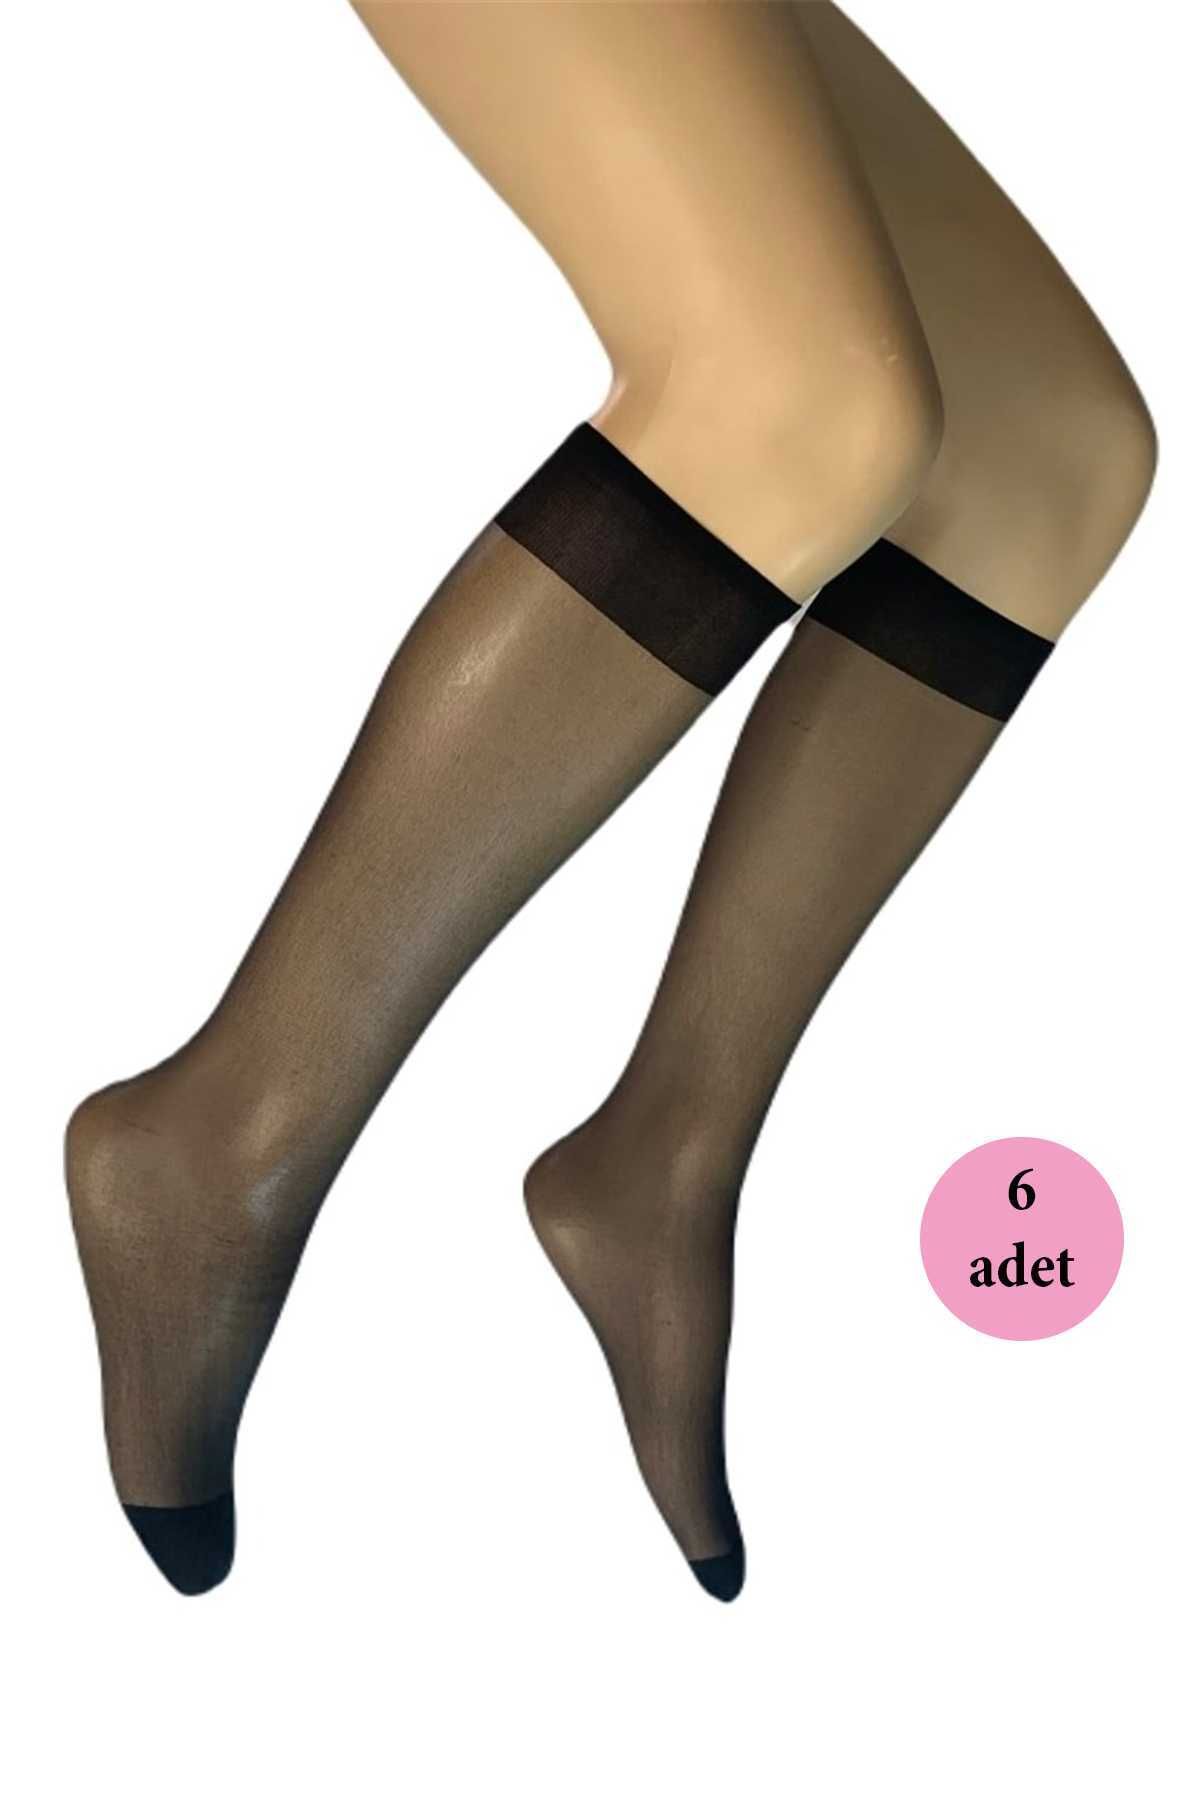 DORE 6 Adet Parlak Dizaltı Kadın Çorap 15 Denye Siyah 500